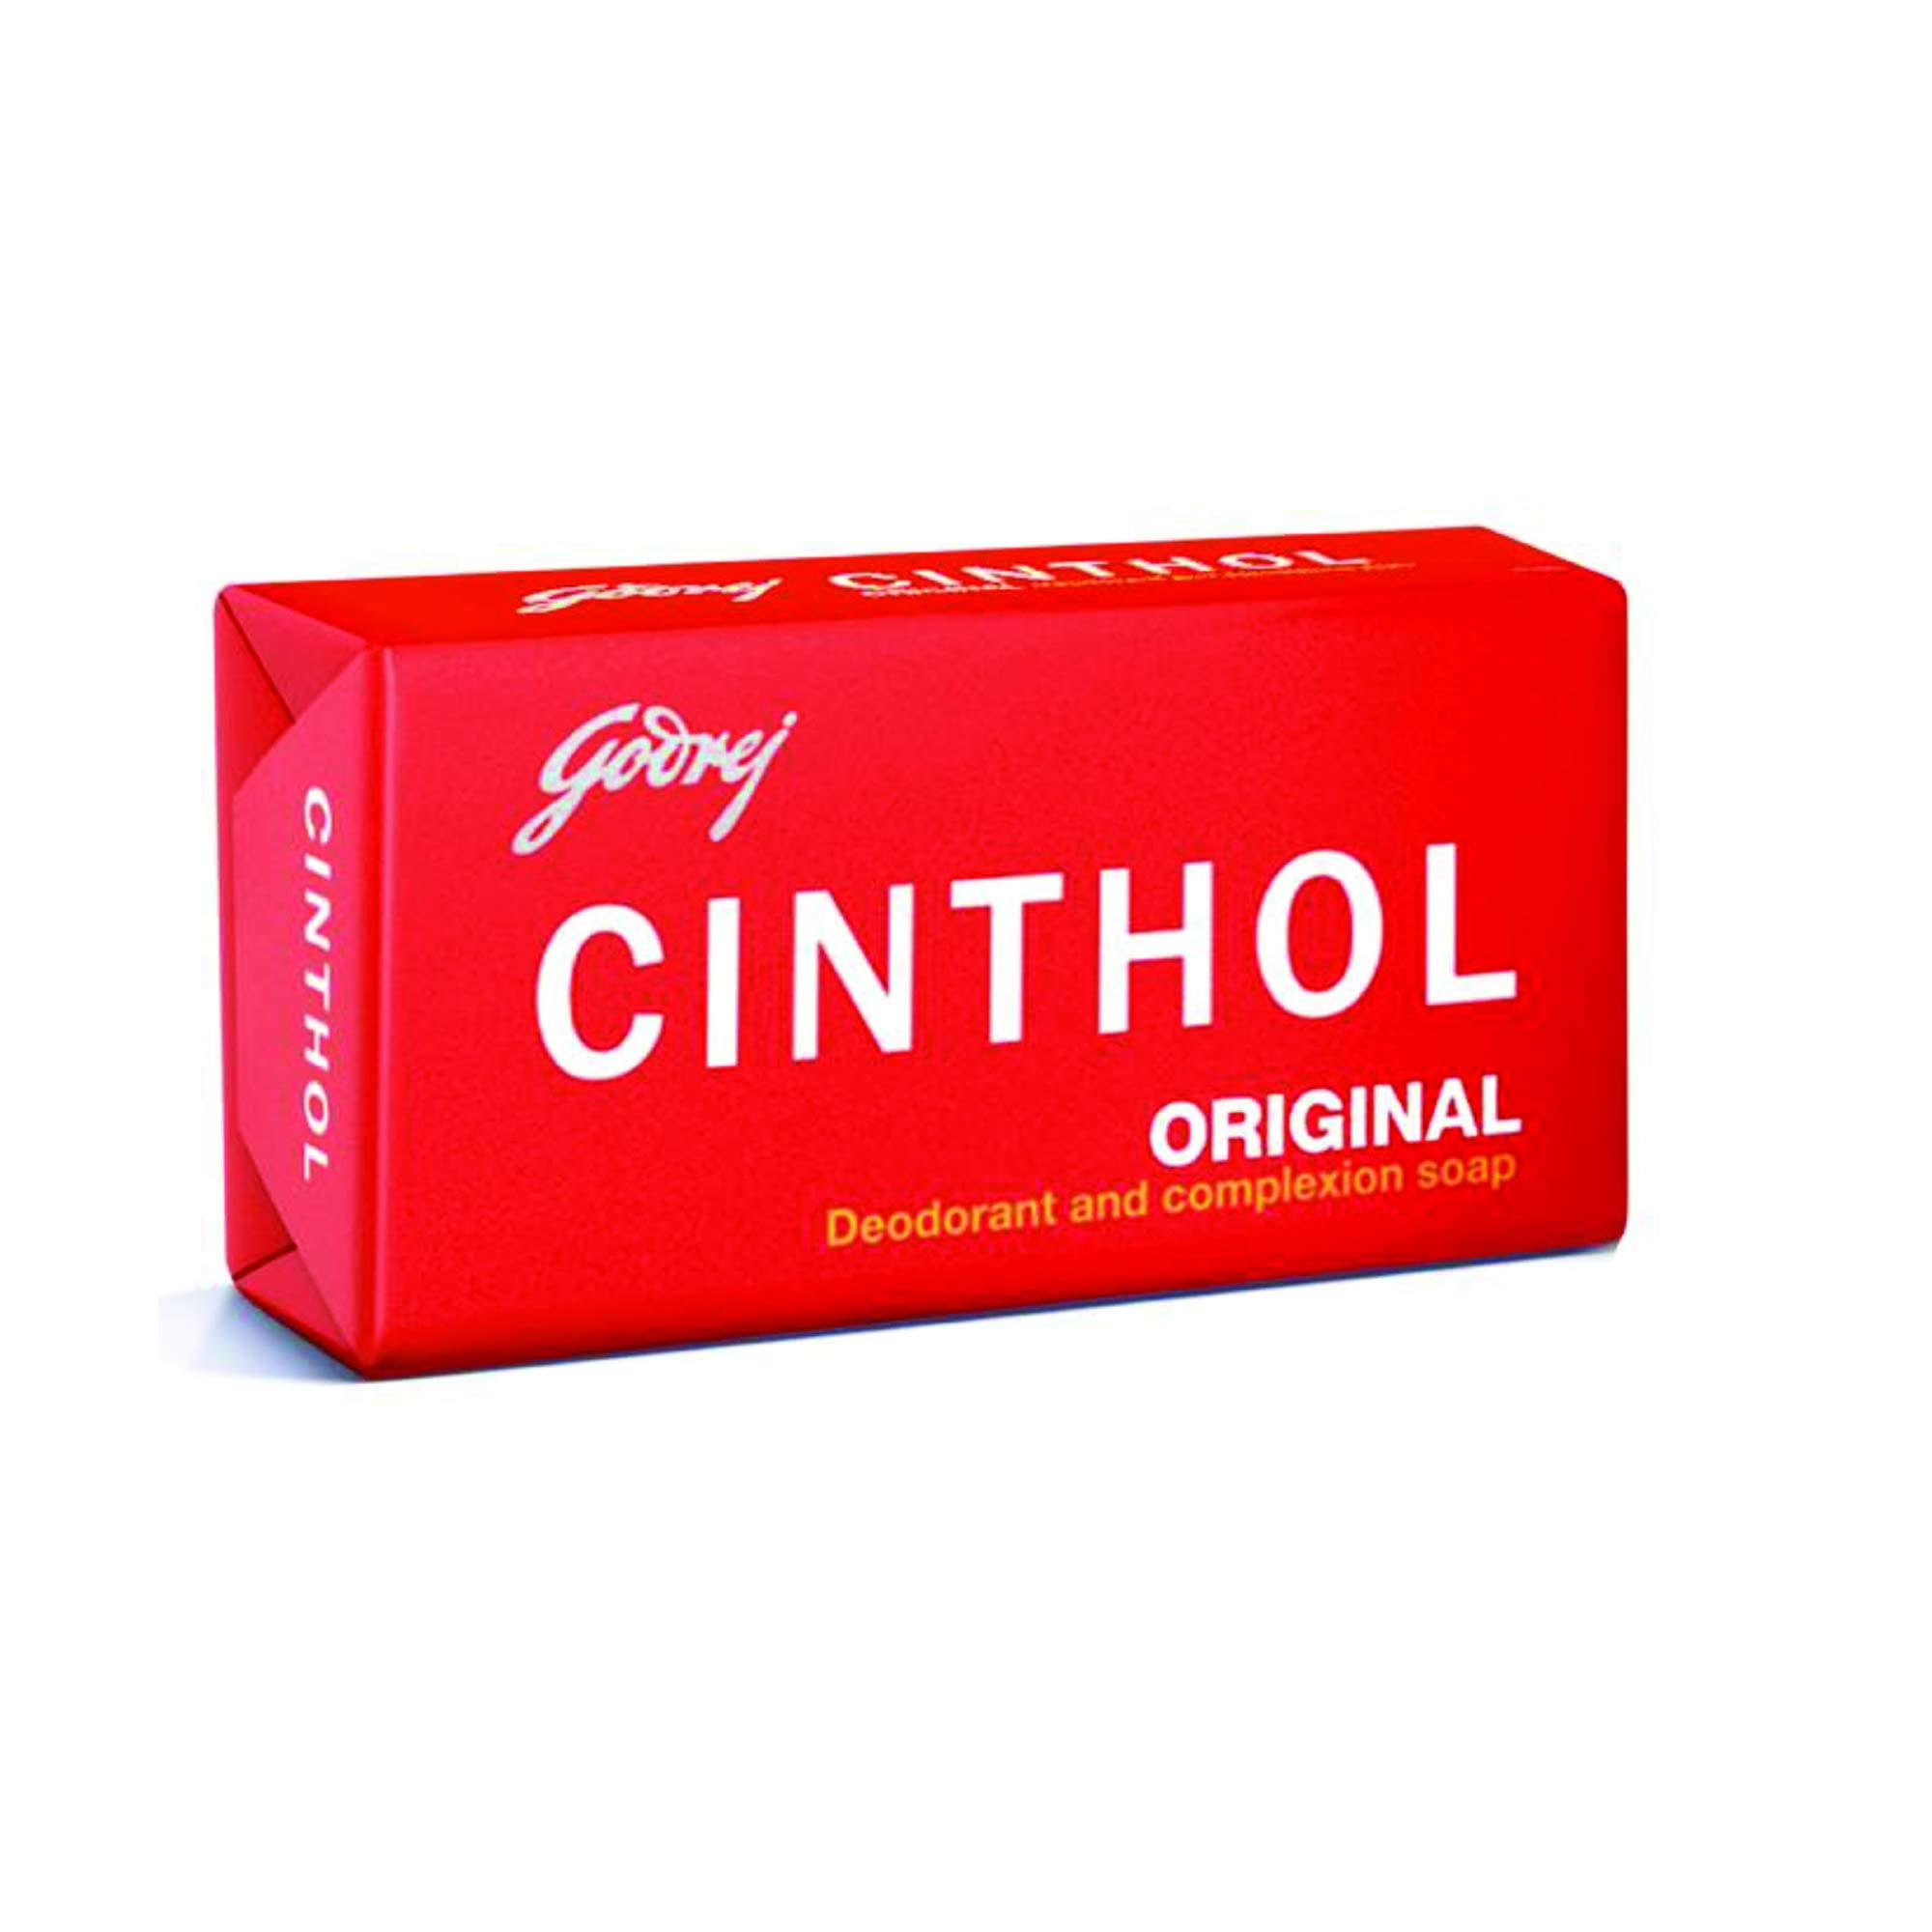 Godrej Cinthol Original Red Soap - 100 G